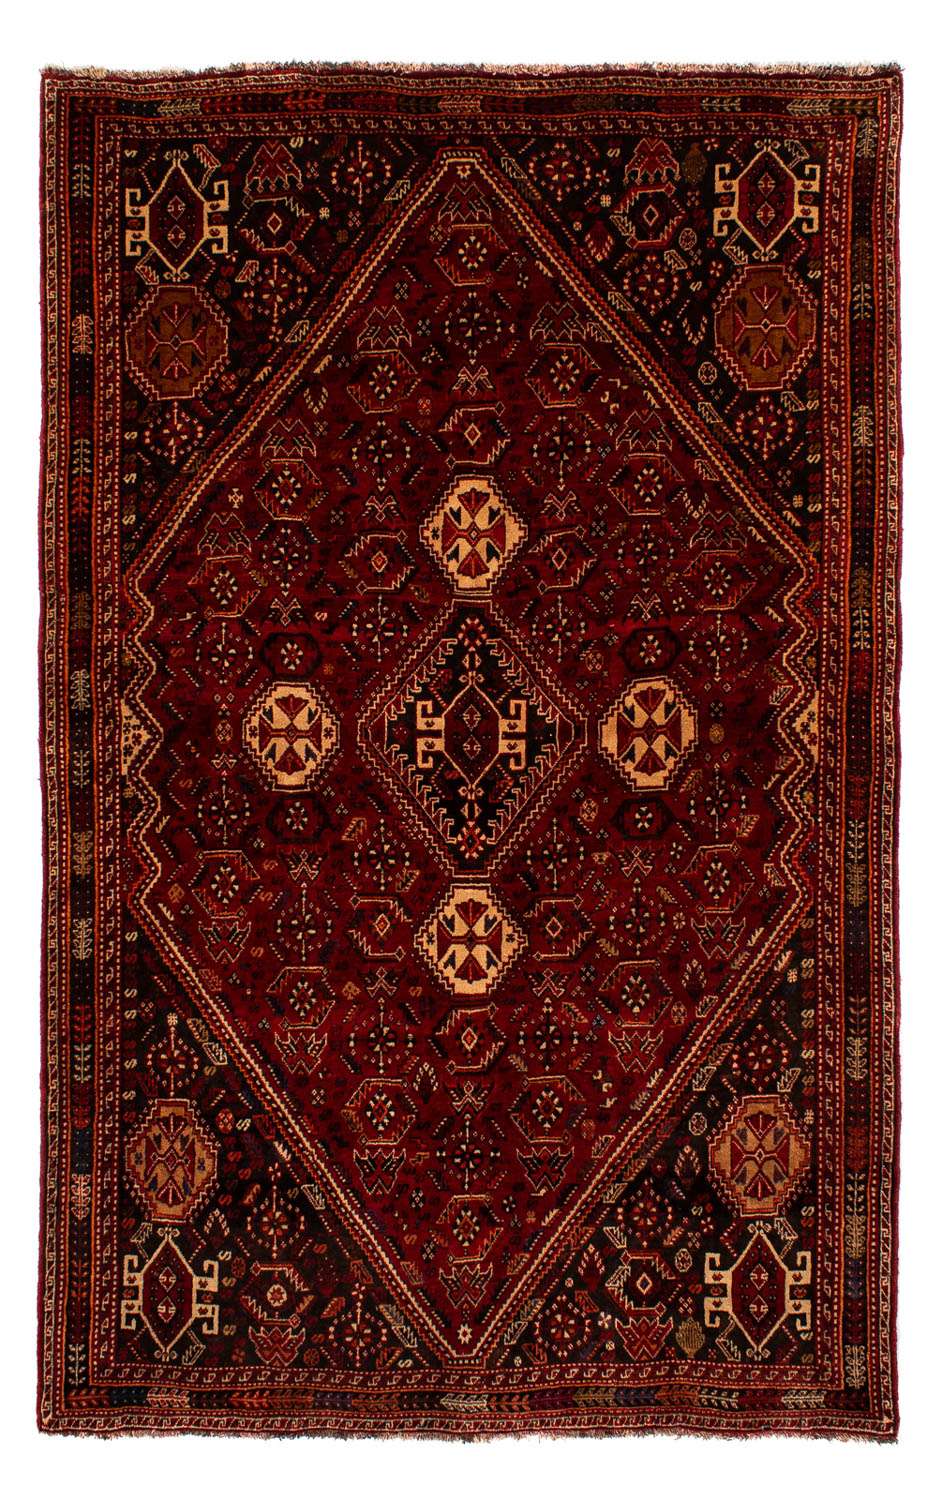 Alfombra persa - Nómada - 275 x 182 cm - rojo oscuro